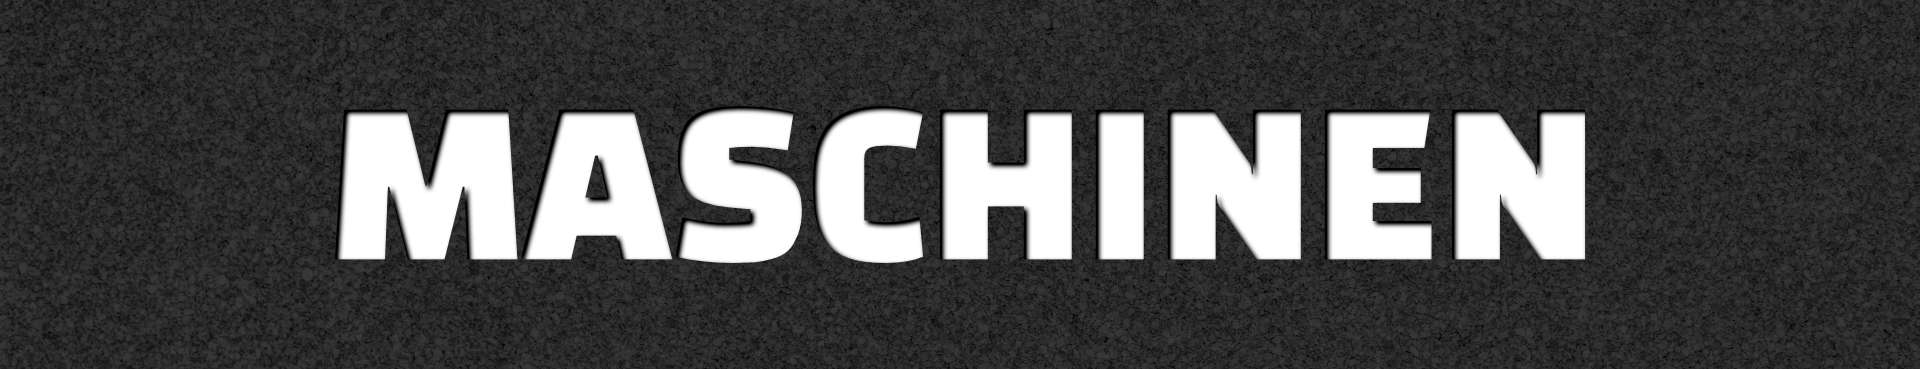 Schleifmaschinen Arten - Schleifzeug.de